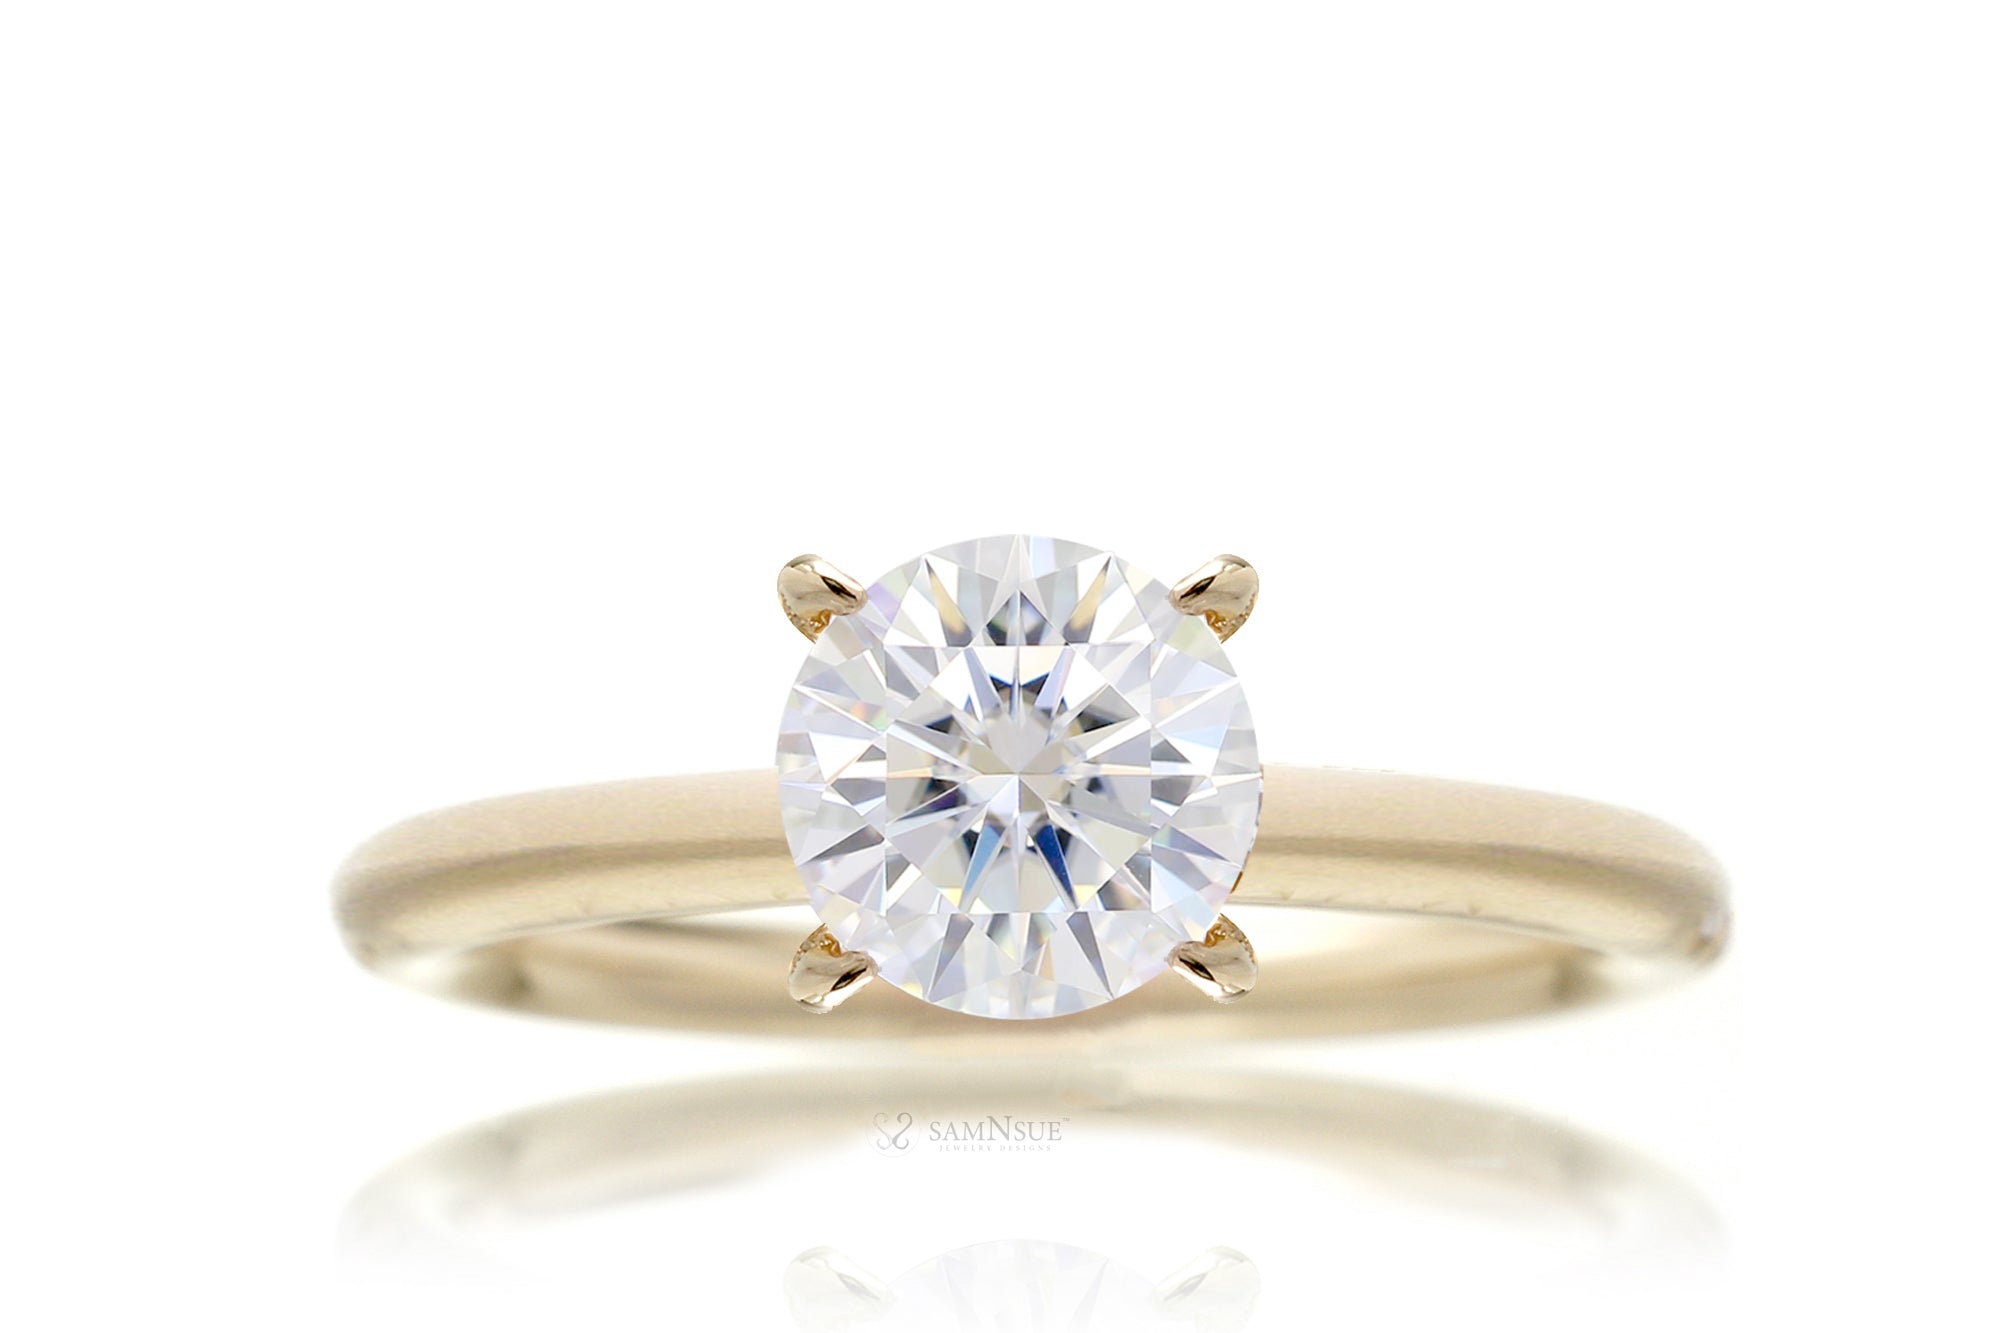 The Ava Round Diamond Ring (Lab-Grown)